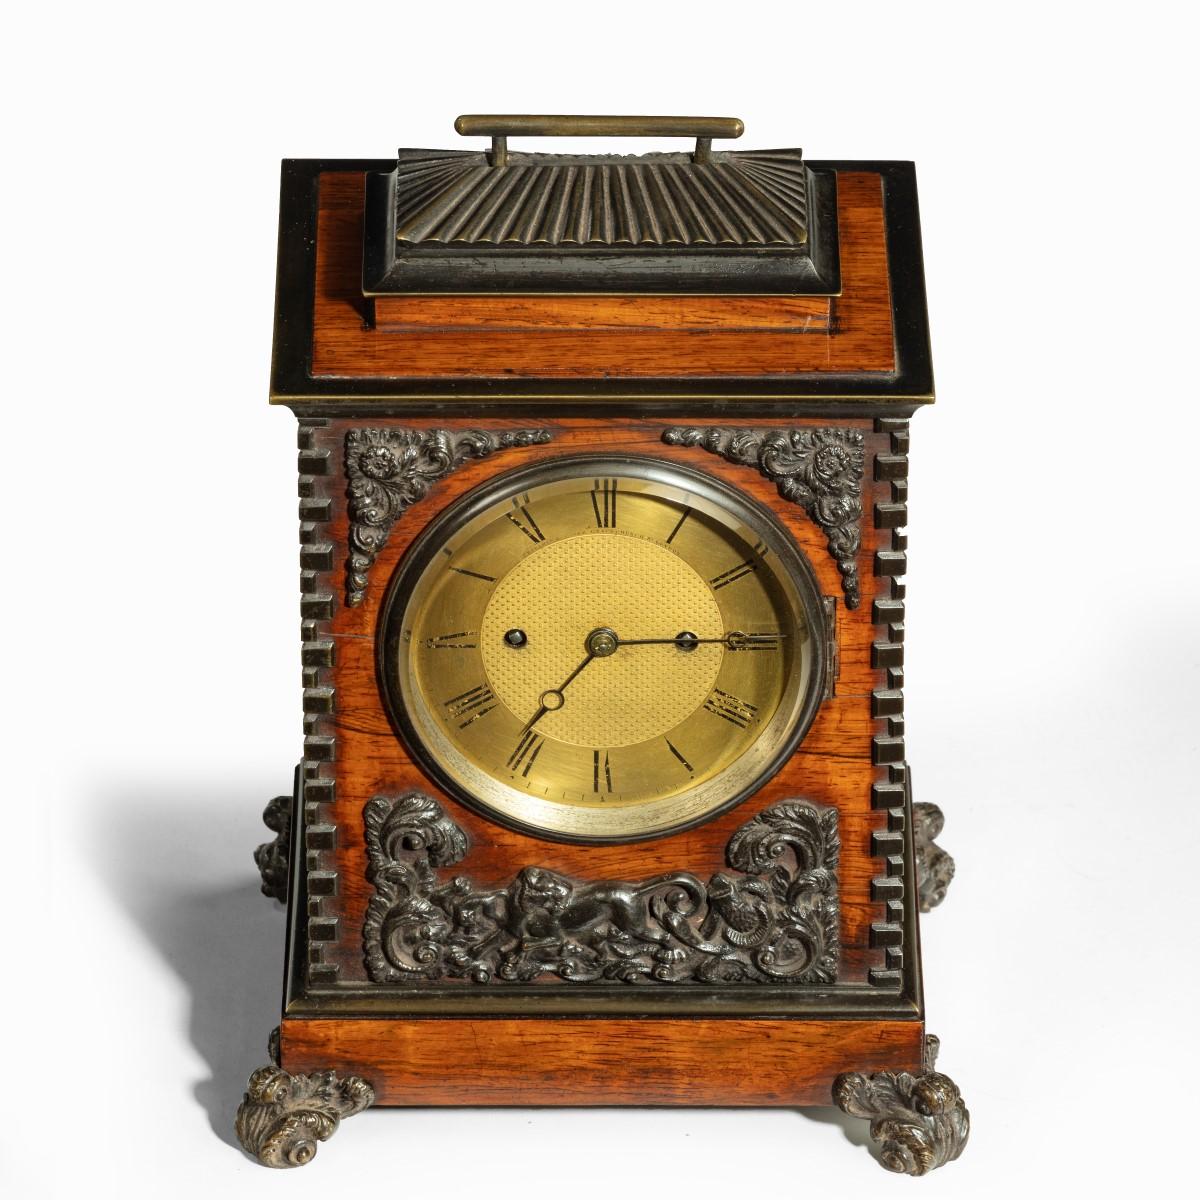 Horloge William IV en bois de rose et bronze par Frodsham 185 & Baker, le mouvement de huit jours en laiton sonnant sur une cloche, la plaque arrière numérotée '292', le cadran circulaire en laiton avec des chiffres romains et un centre tourné,